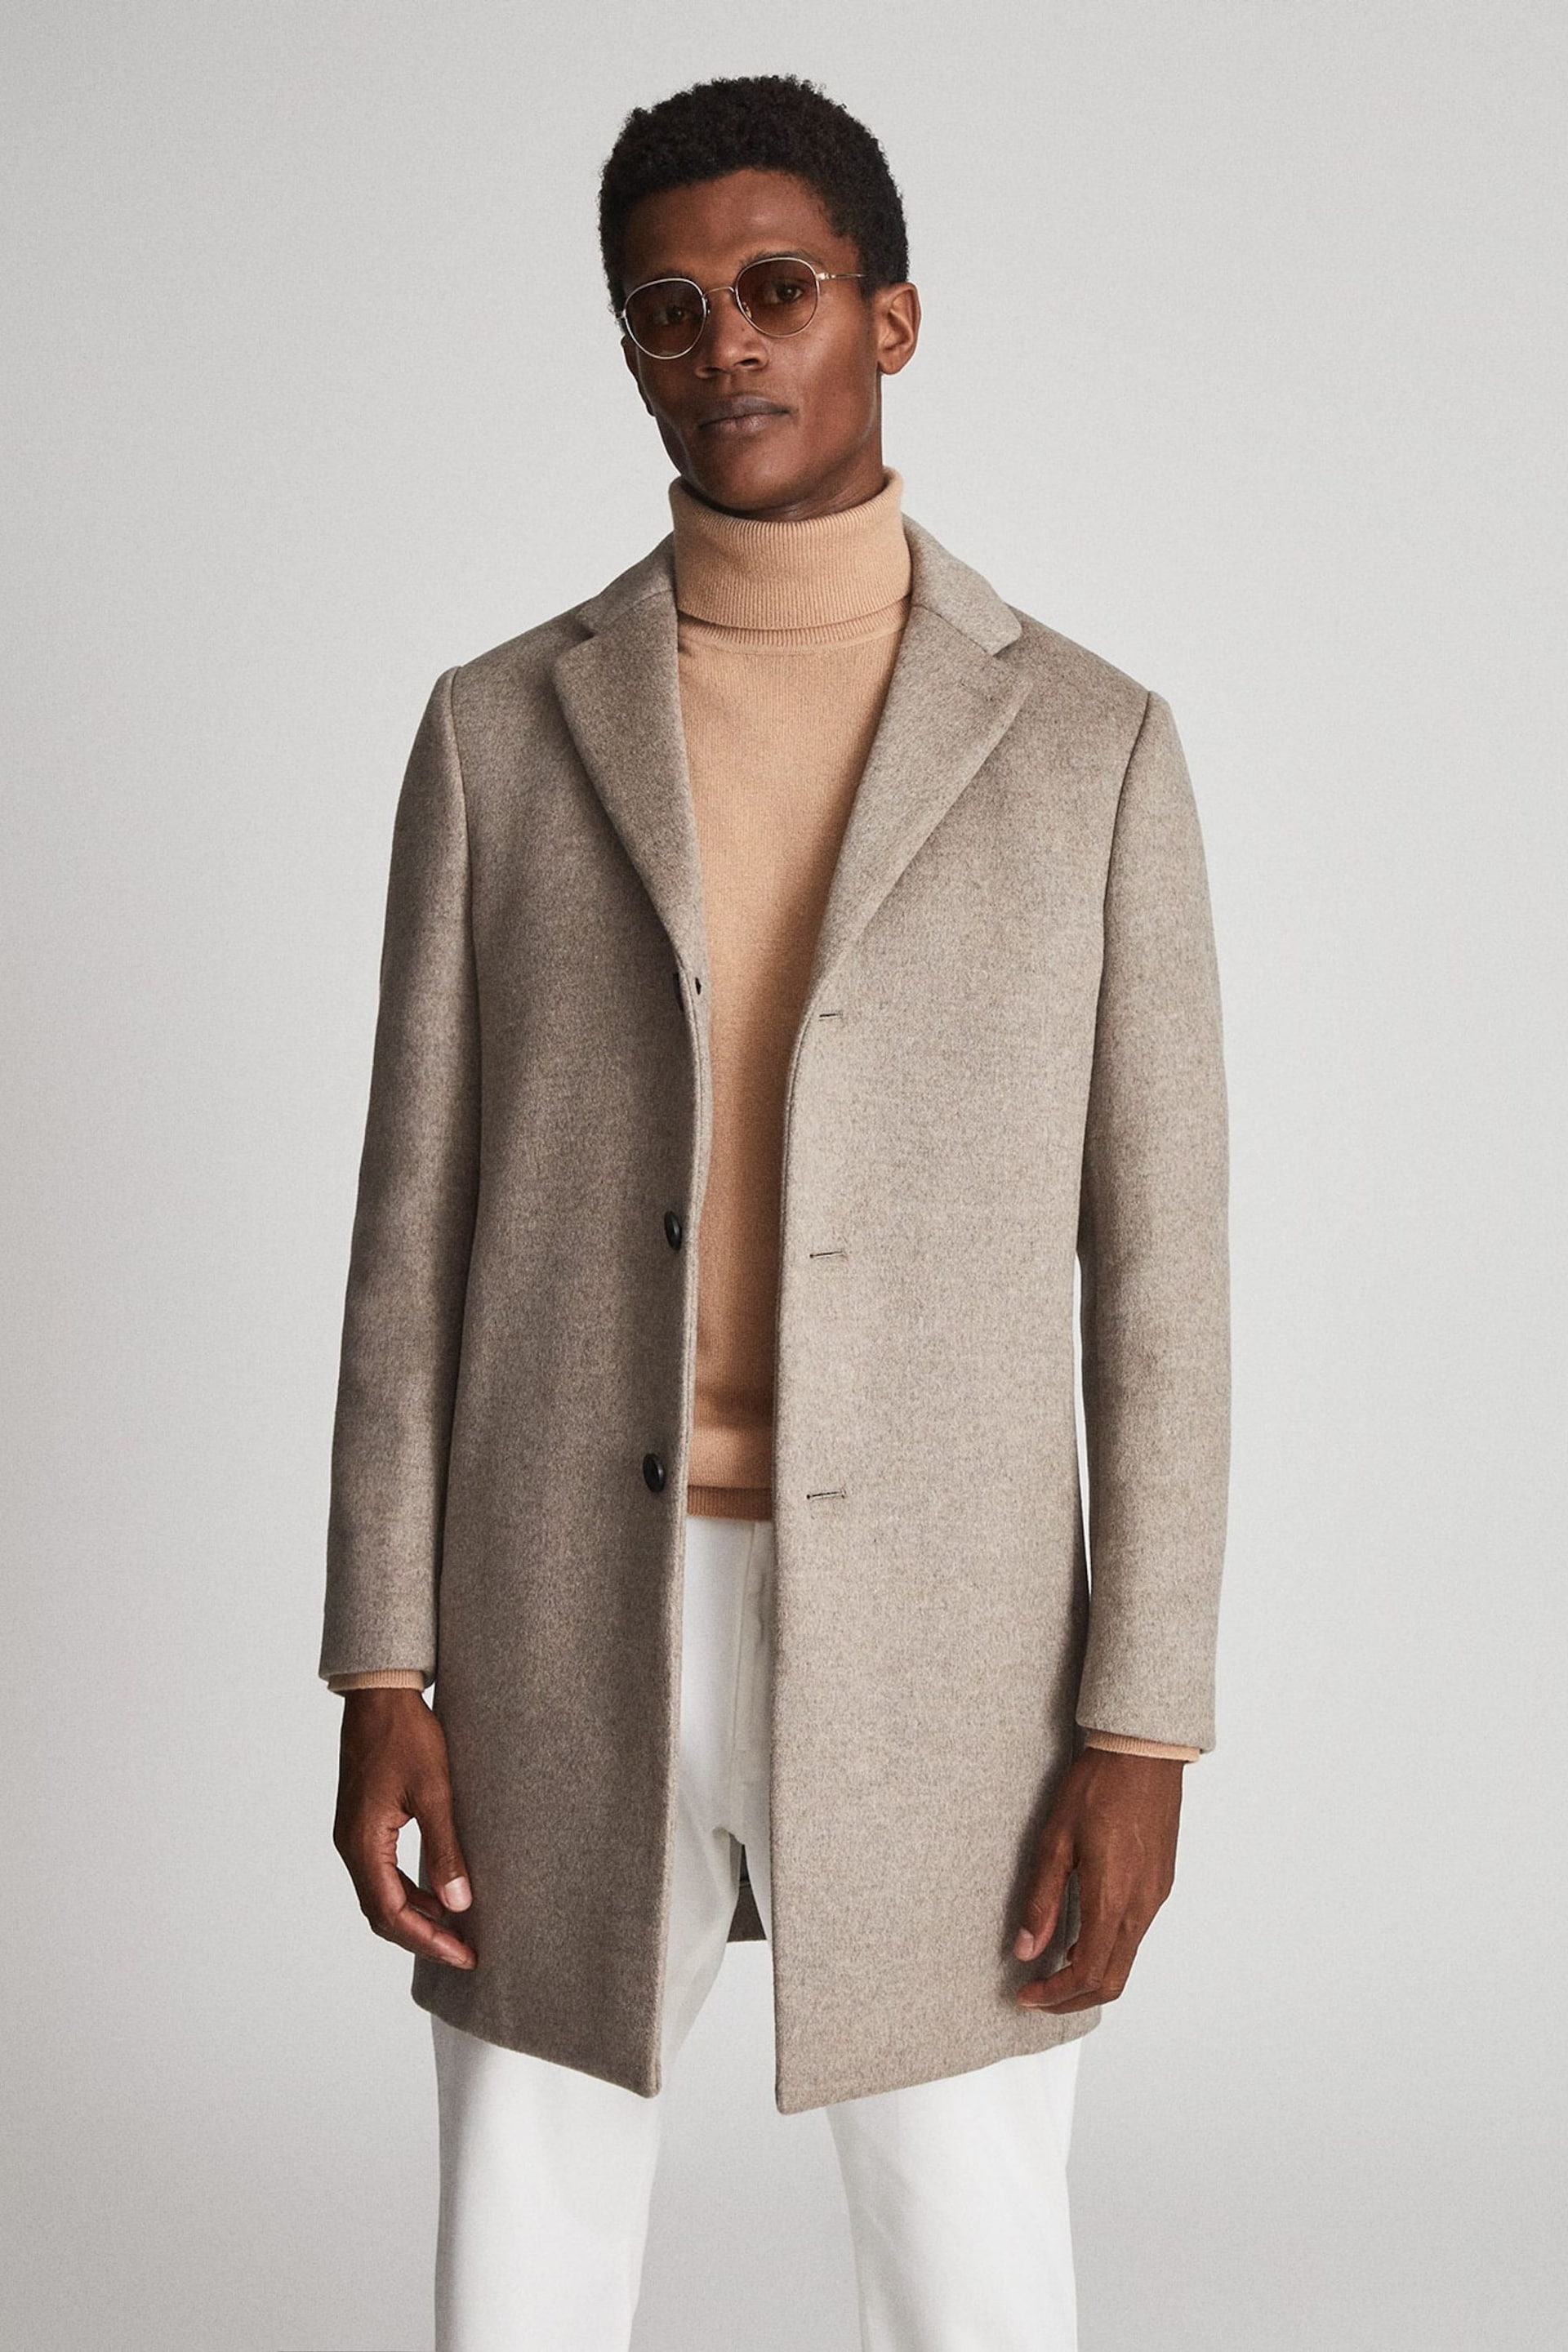 Reiss Natural Gable Wool Blend Epsom Overcoat - Image 4 of 5